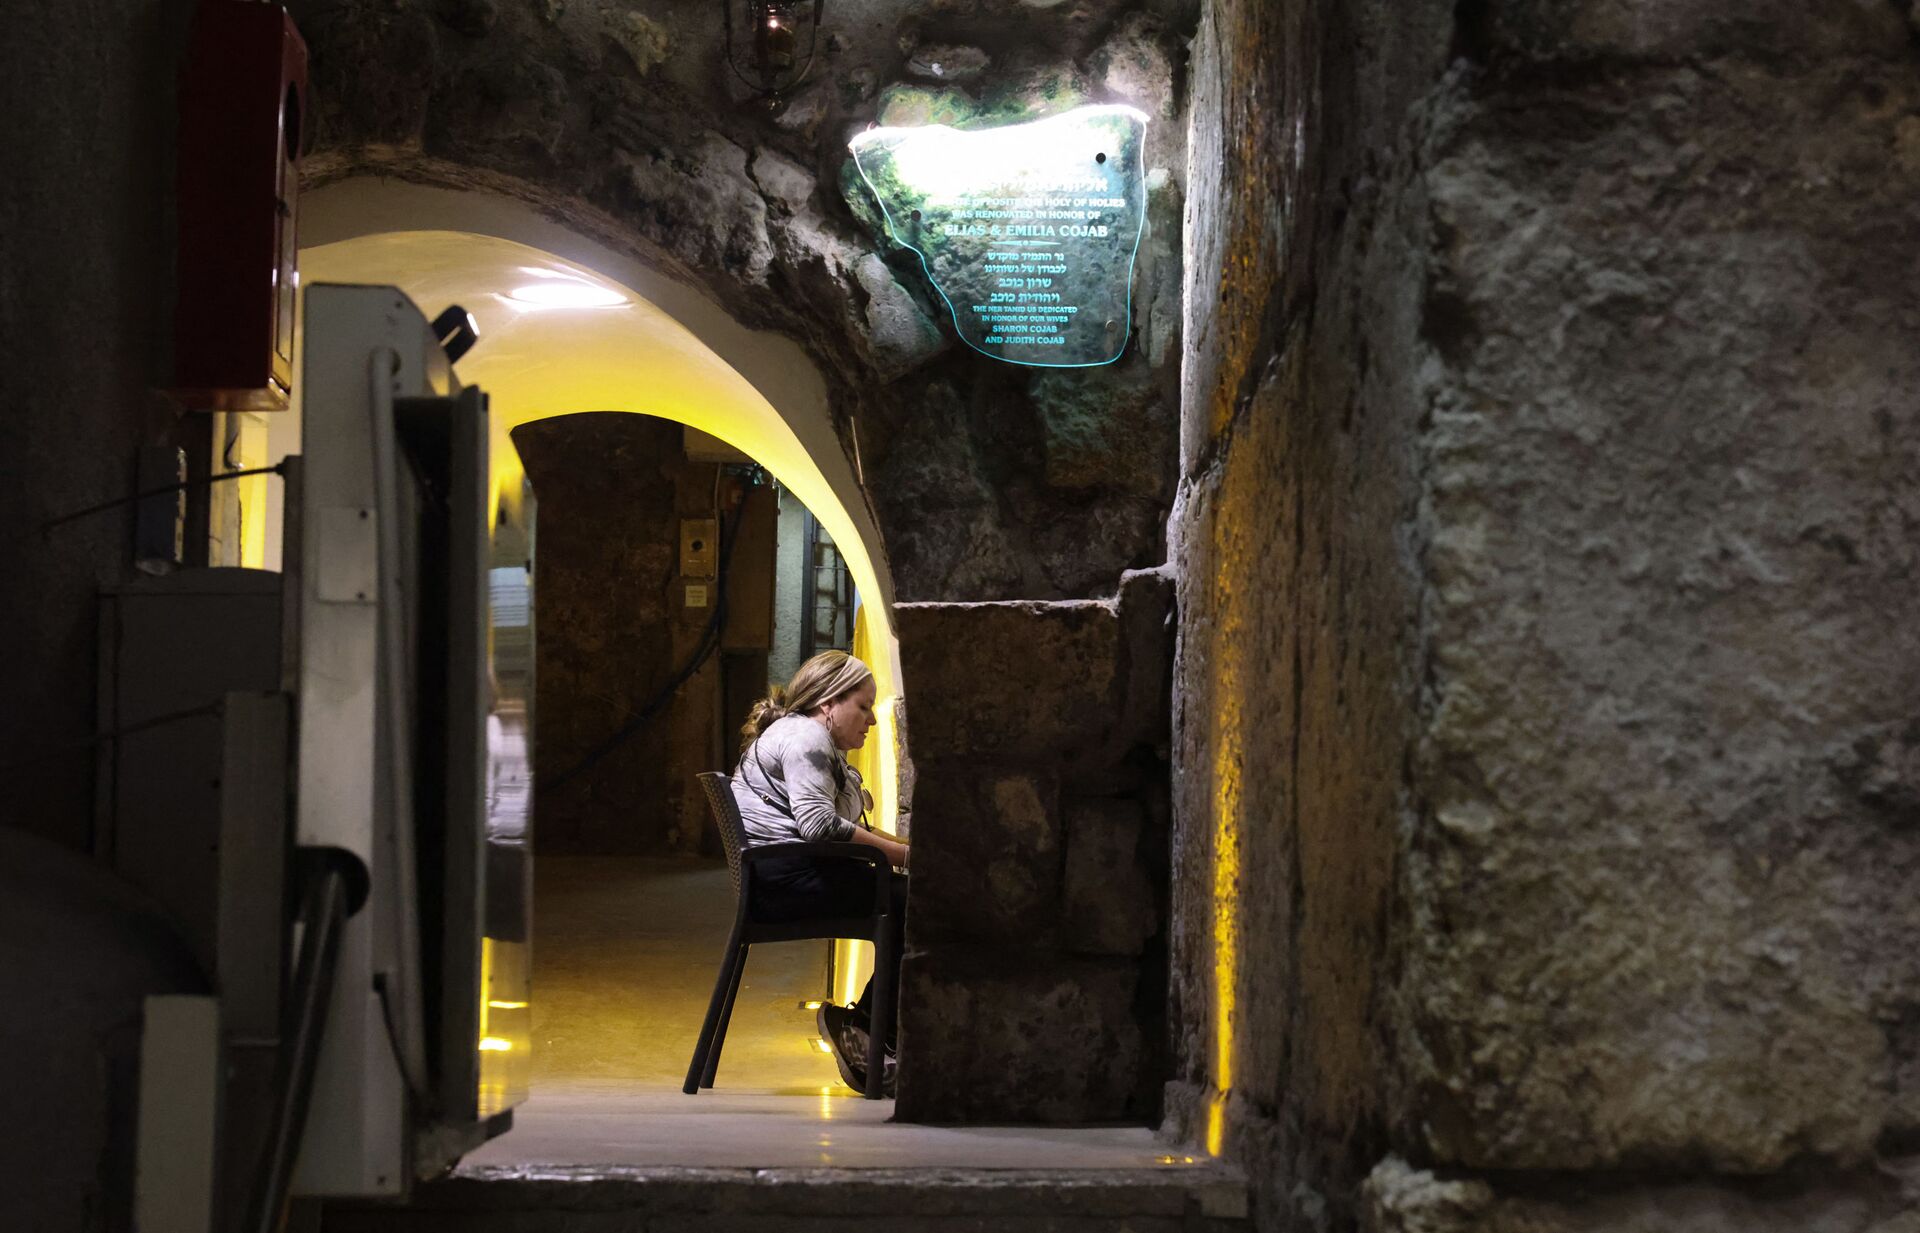 Јеврејка се моли пред подземним делом Западног зида у Јерусалиму, 8. јула 2021. - Sputnik Србија, 1920, 13.07.2021